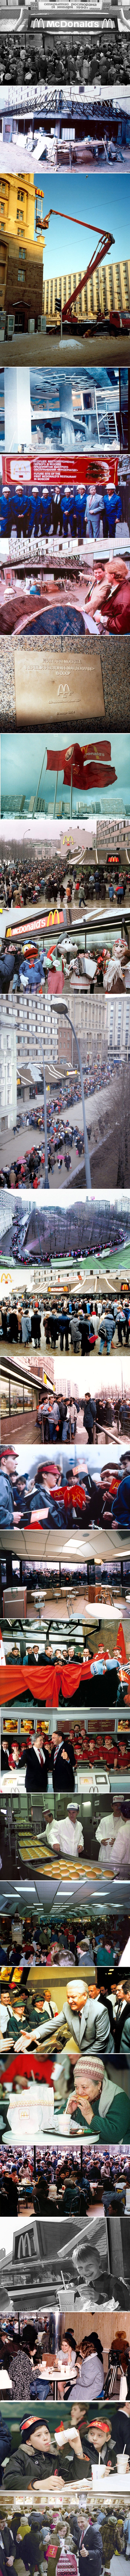 Prvi McDonald’s u Rusiji otvoren je 1990. godine, a ove stare fotografije pokazuju kako je to izgledalo